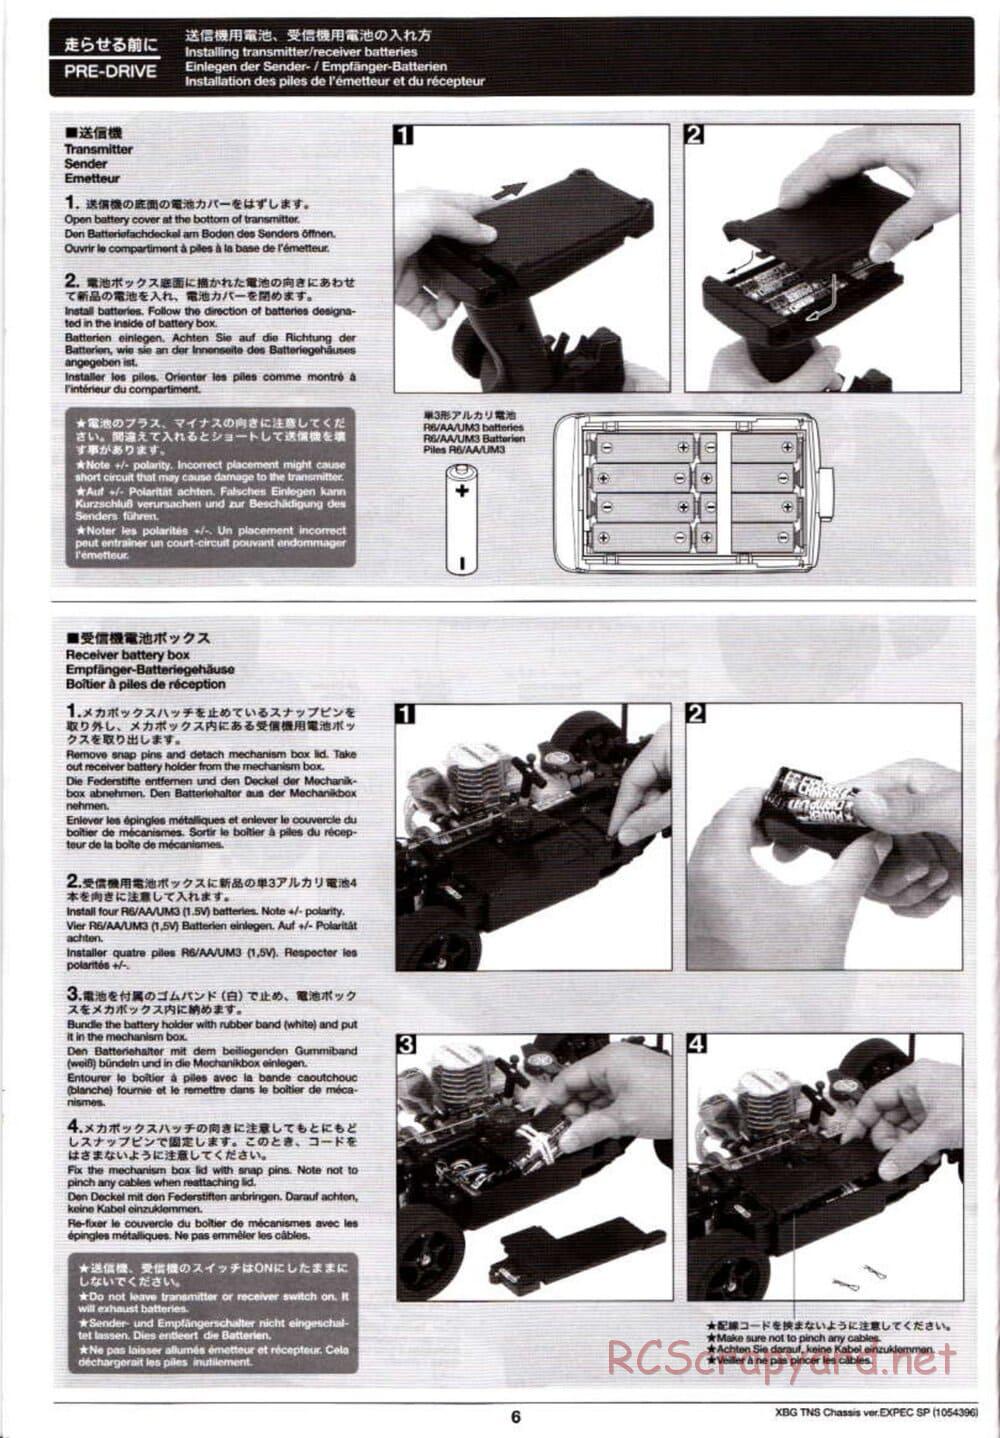 Tamiya - TNS Chassis - Manual - Page 6